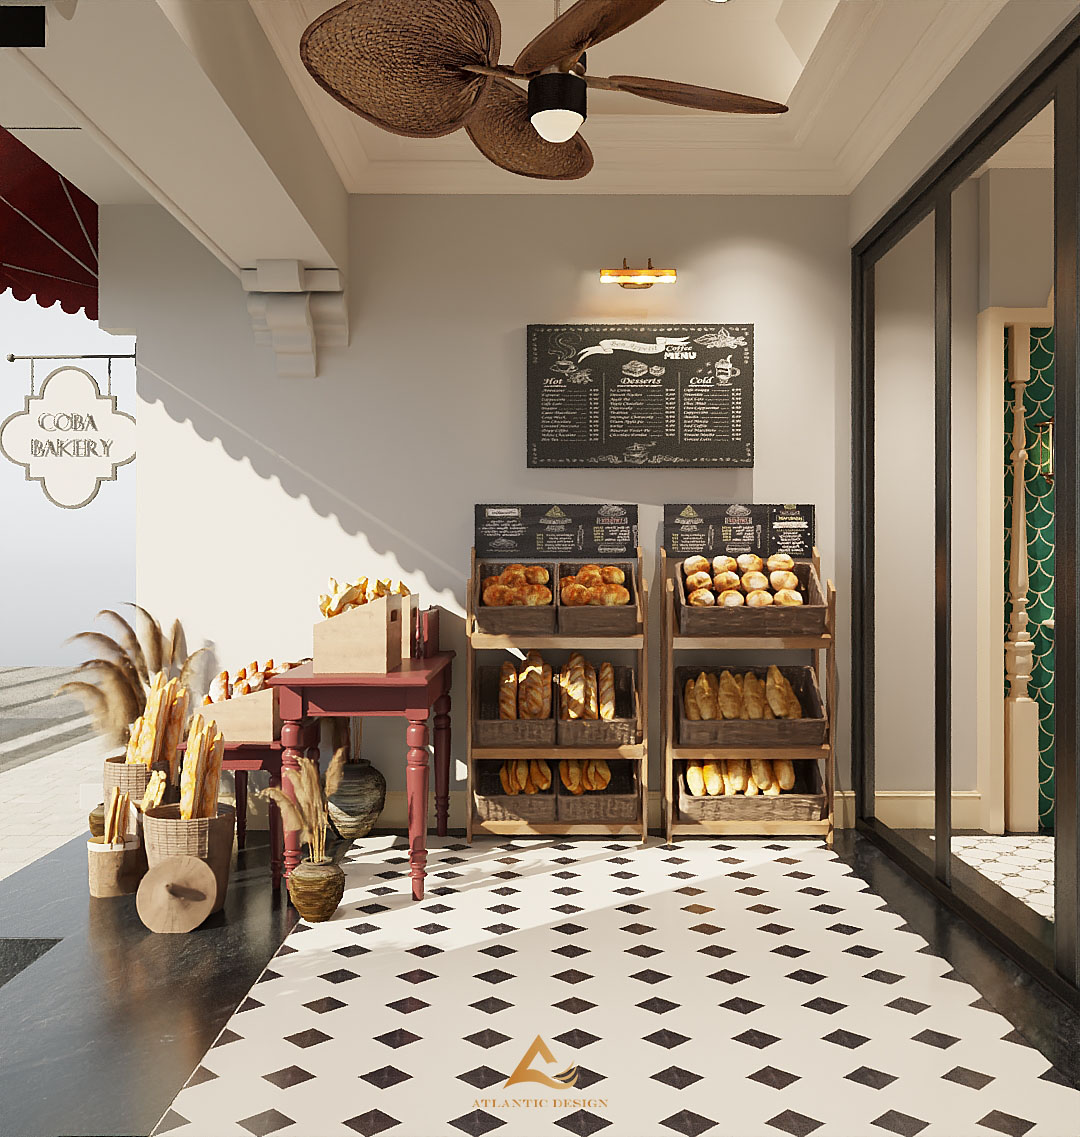 Thiết kế tiệm bánh Indochine – dự án của chị Thảo 69 Hàng Gai